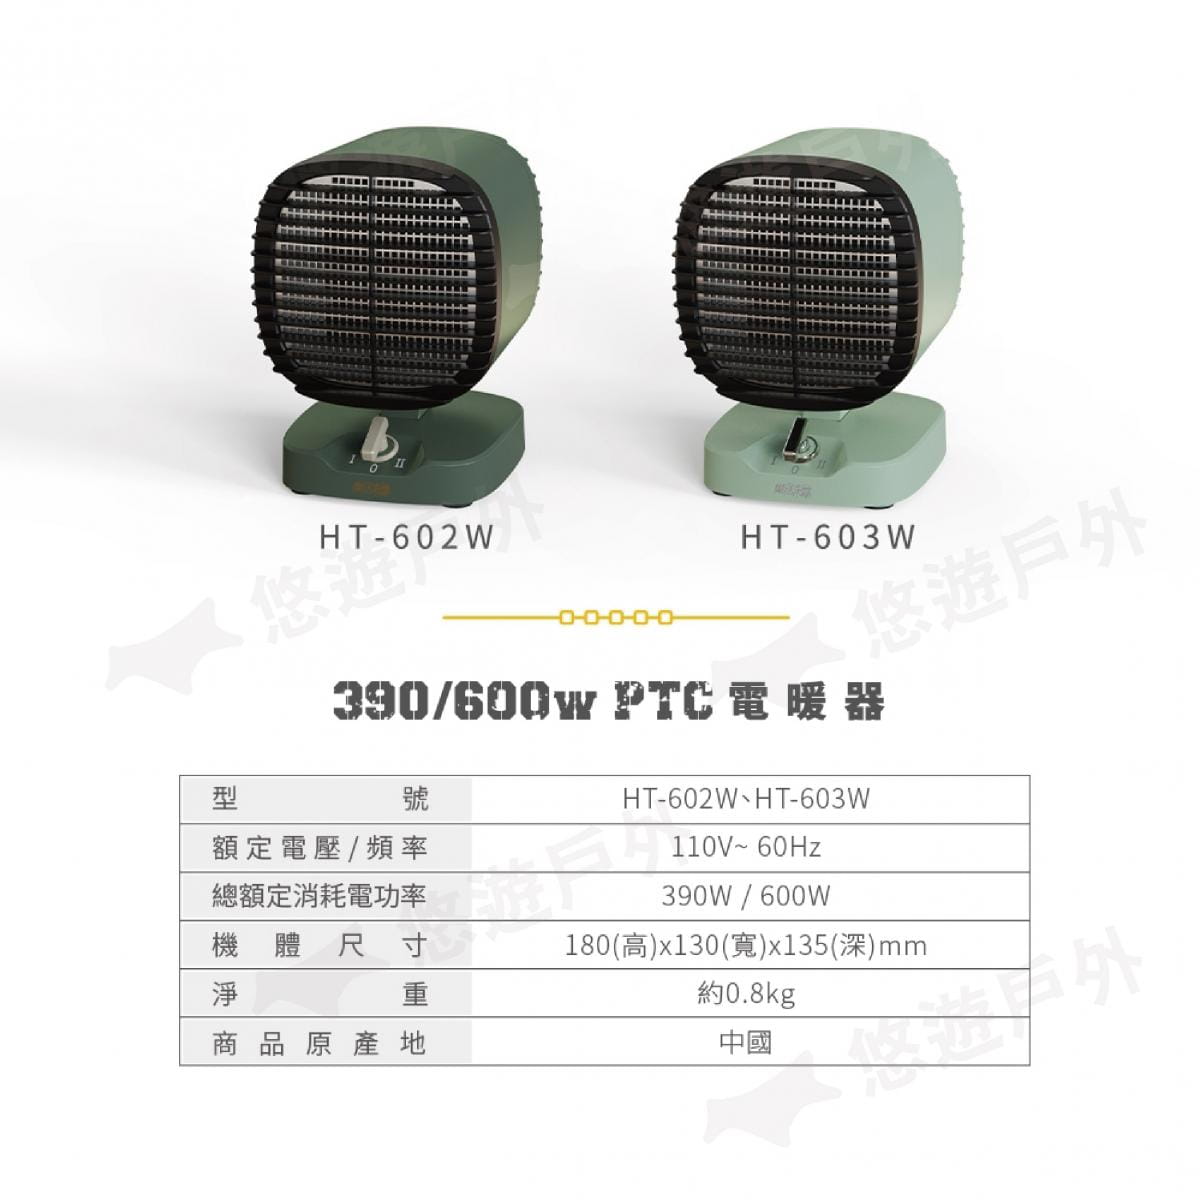 【樂活不露】PTC三代電暖器_390/600W (悠遊戶外) 7